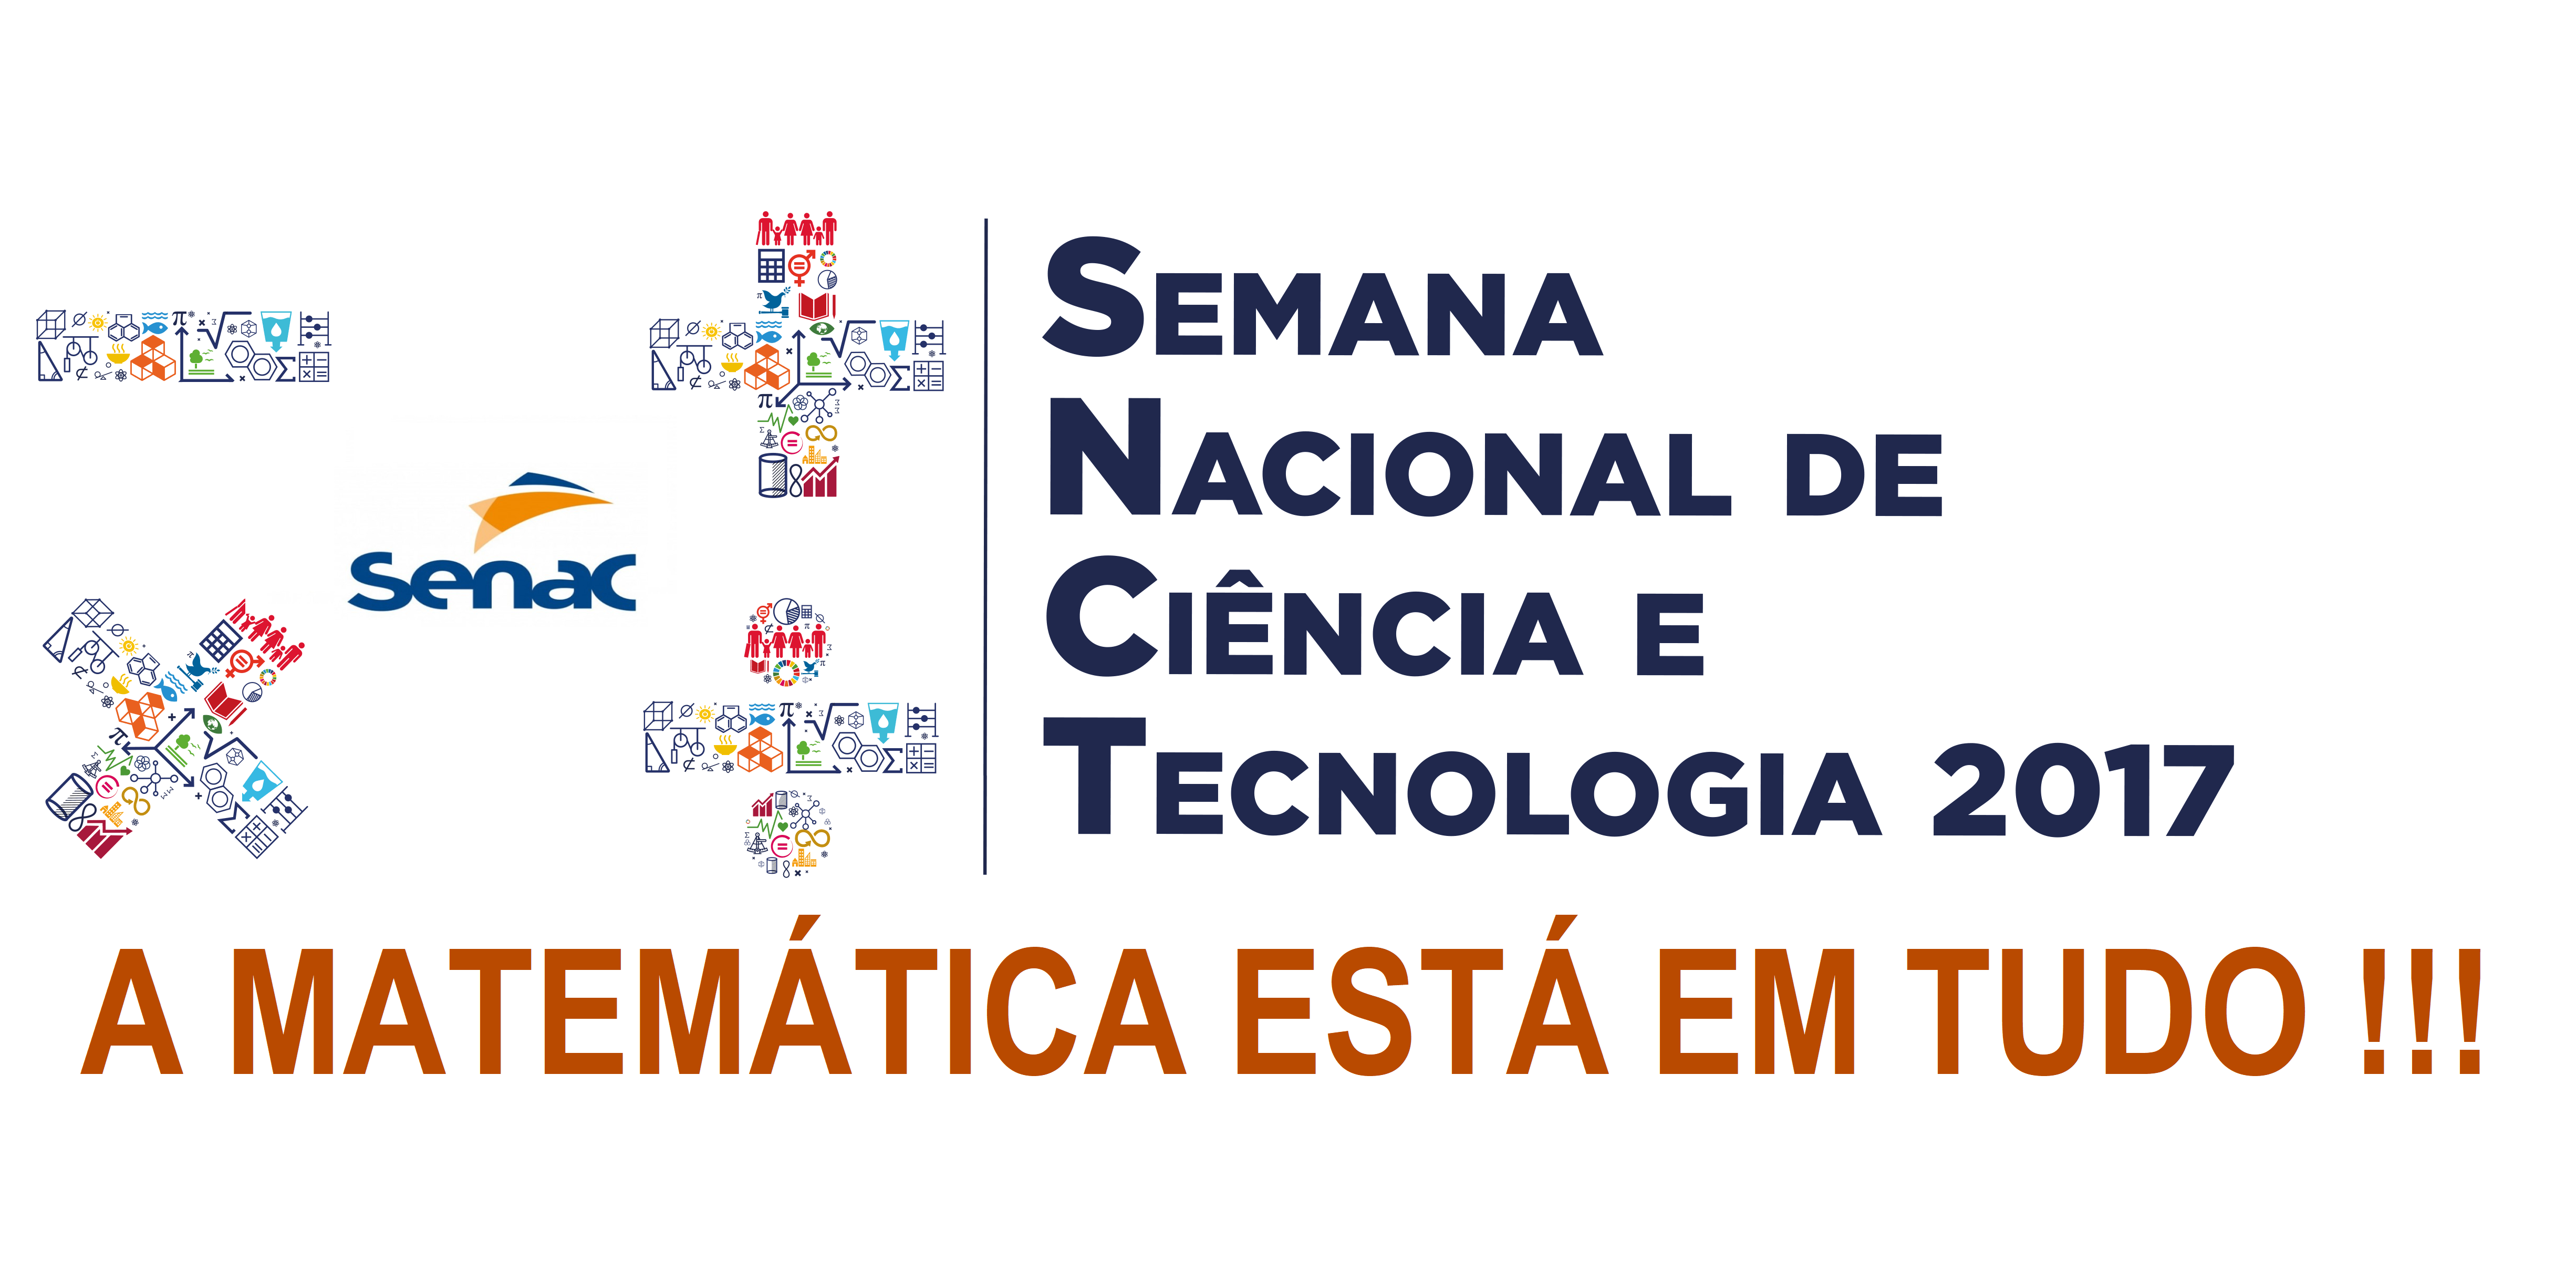 Você está visualizando atualmente Semana Nacional de Ciência e Tecnologia do Maranhão conta com participação do Senac